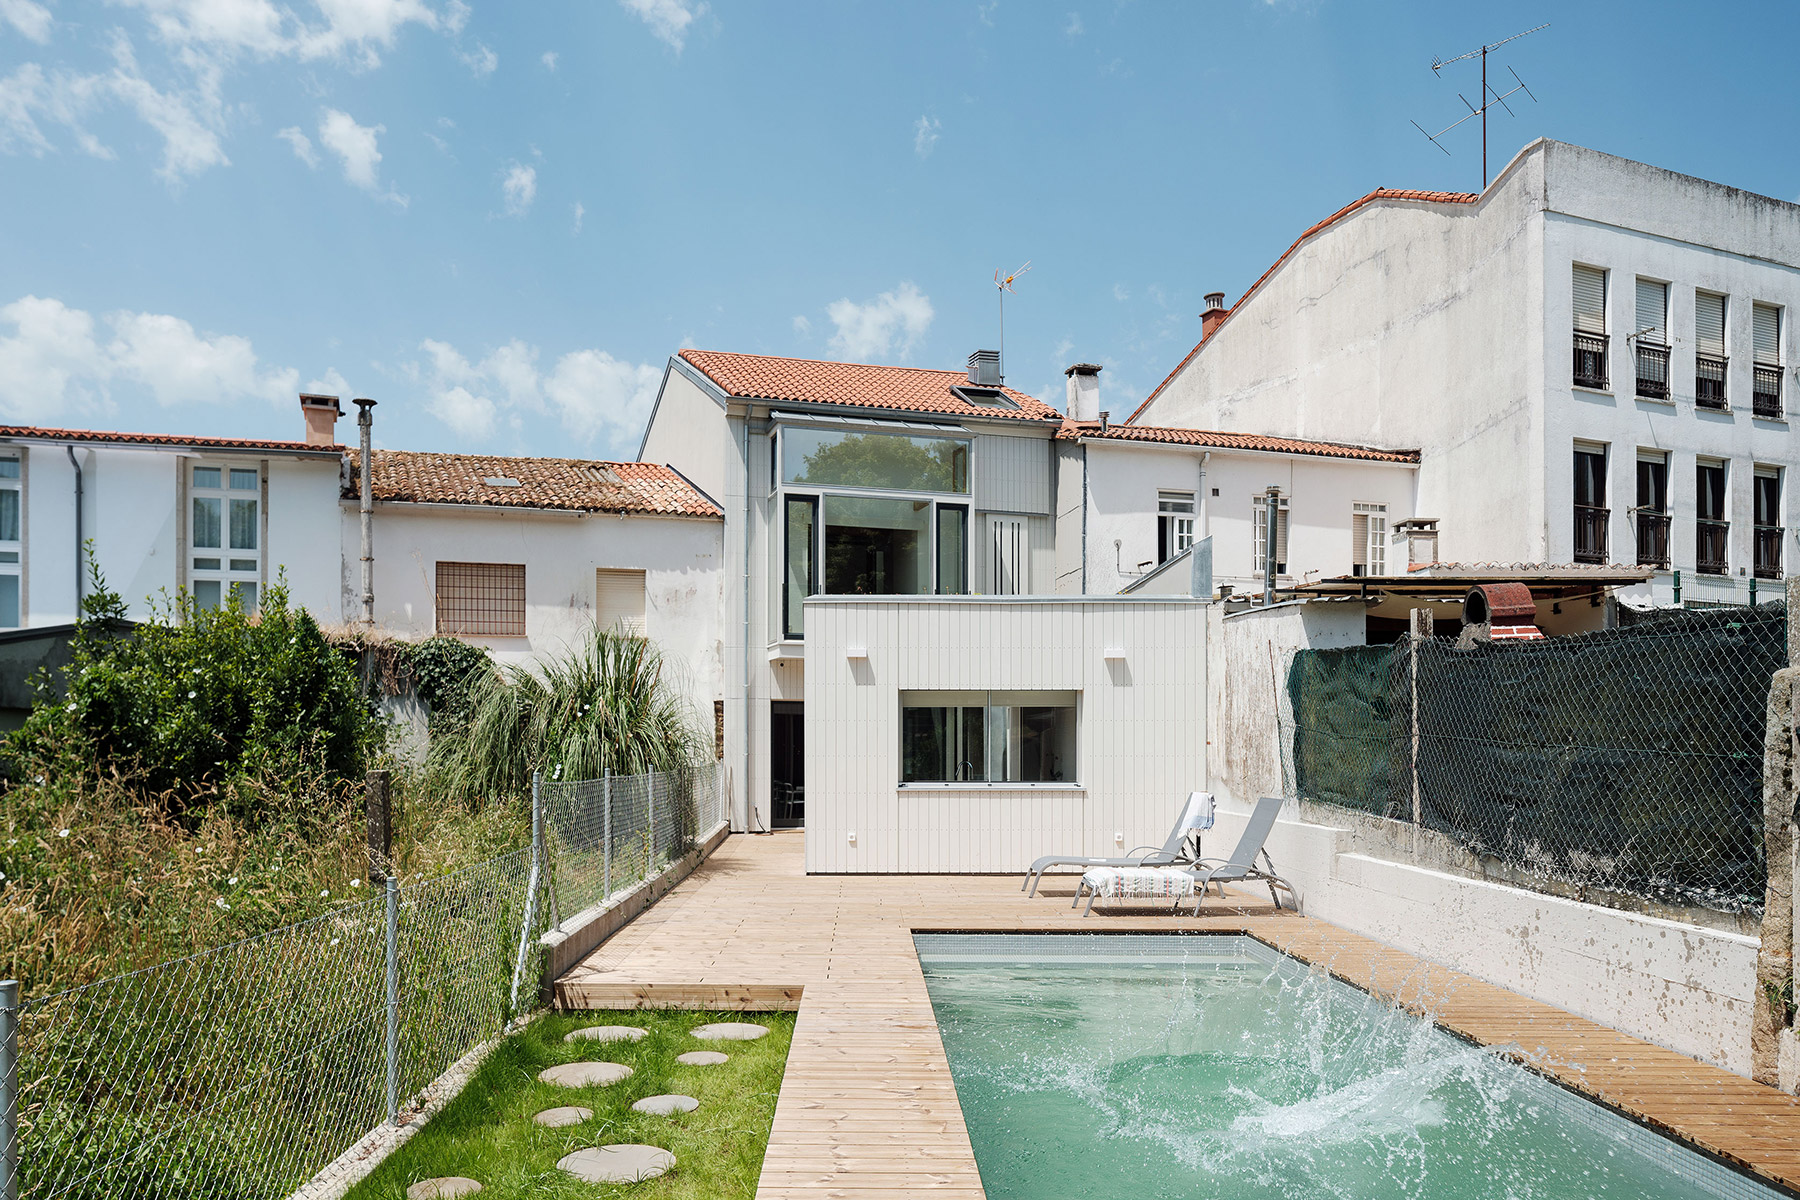 El estudio de arquitectos Arrokabe convierte una casa semiderruida en una luminosa y versátil casa de tres alturas en Santiago de Compostela